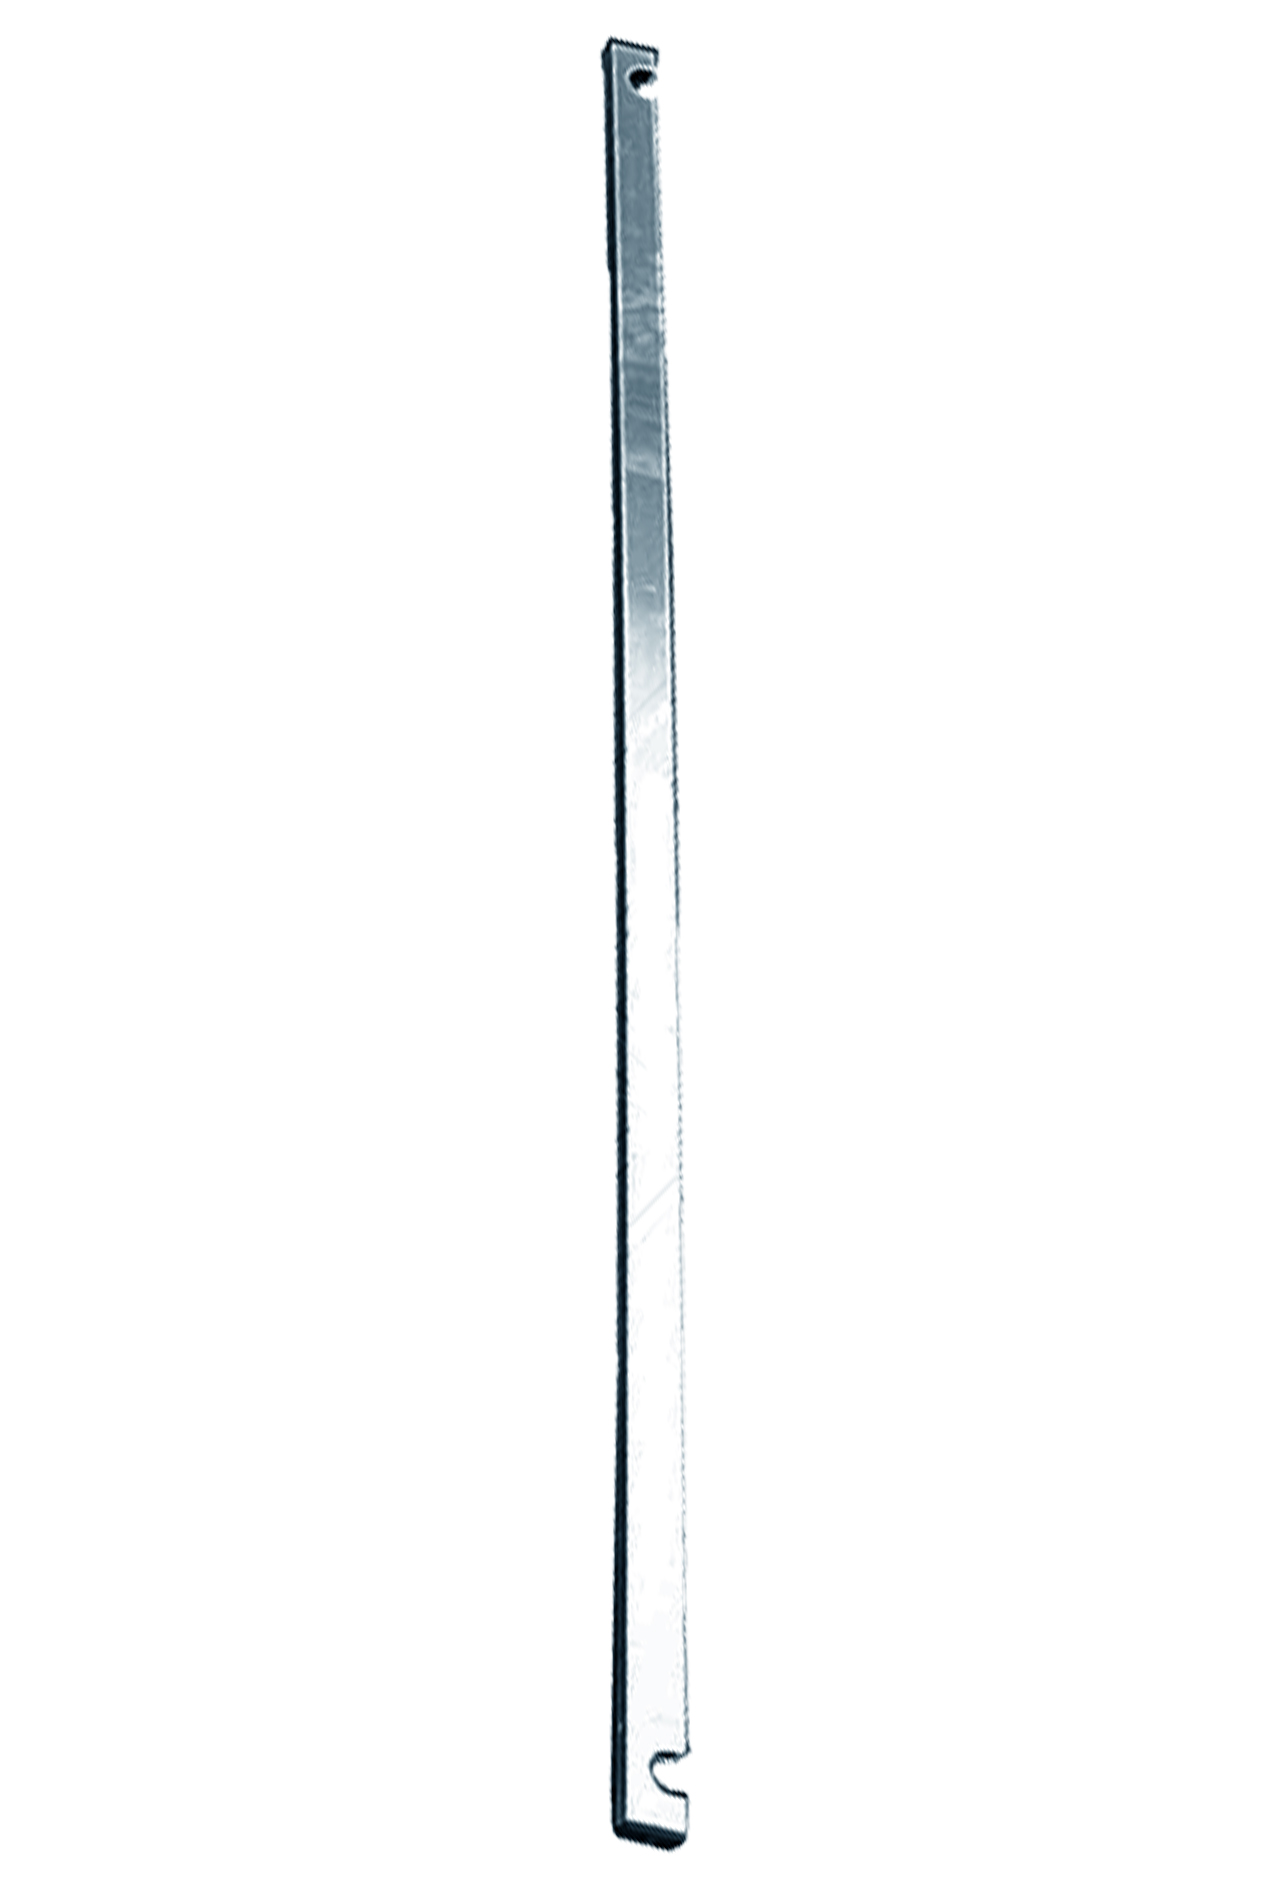 Дополнительное изображение Stabilo серии 5500 рабочая высота 6,4 м, размер площадки (2x1.5 м)